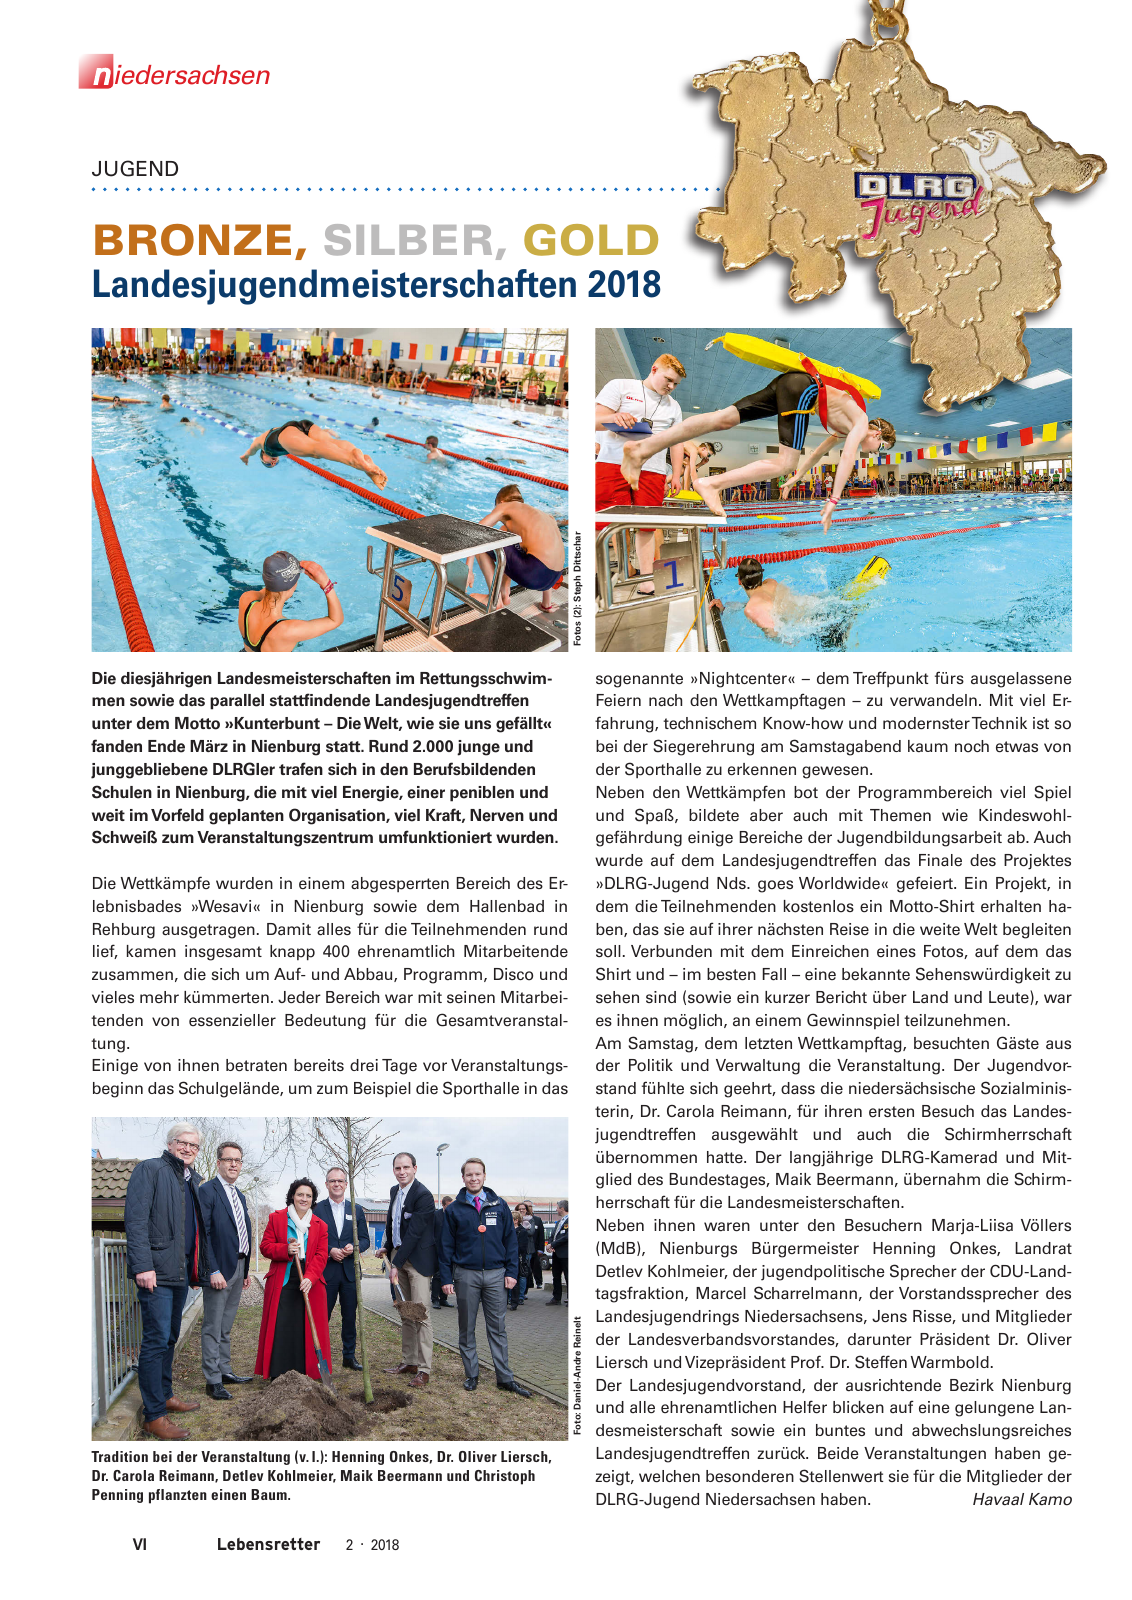 Vorschau Lebensretter 2/2018 - Regionalausgabe Niedersachsen Seite 8